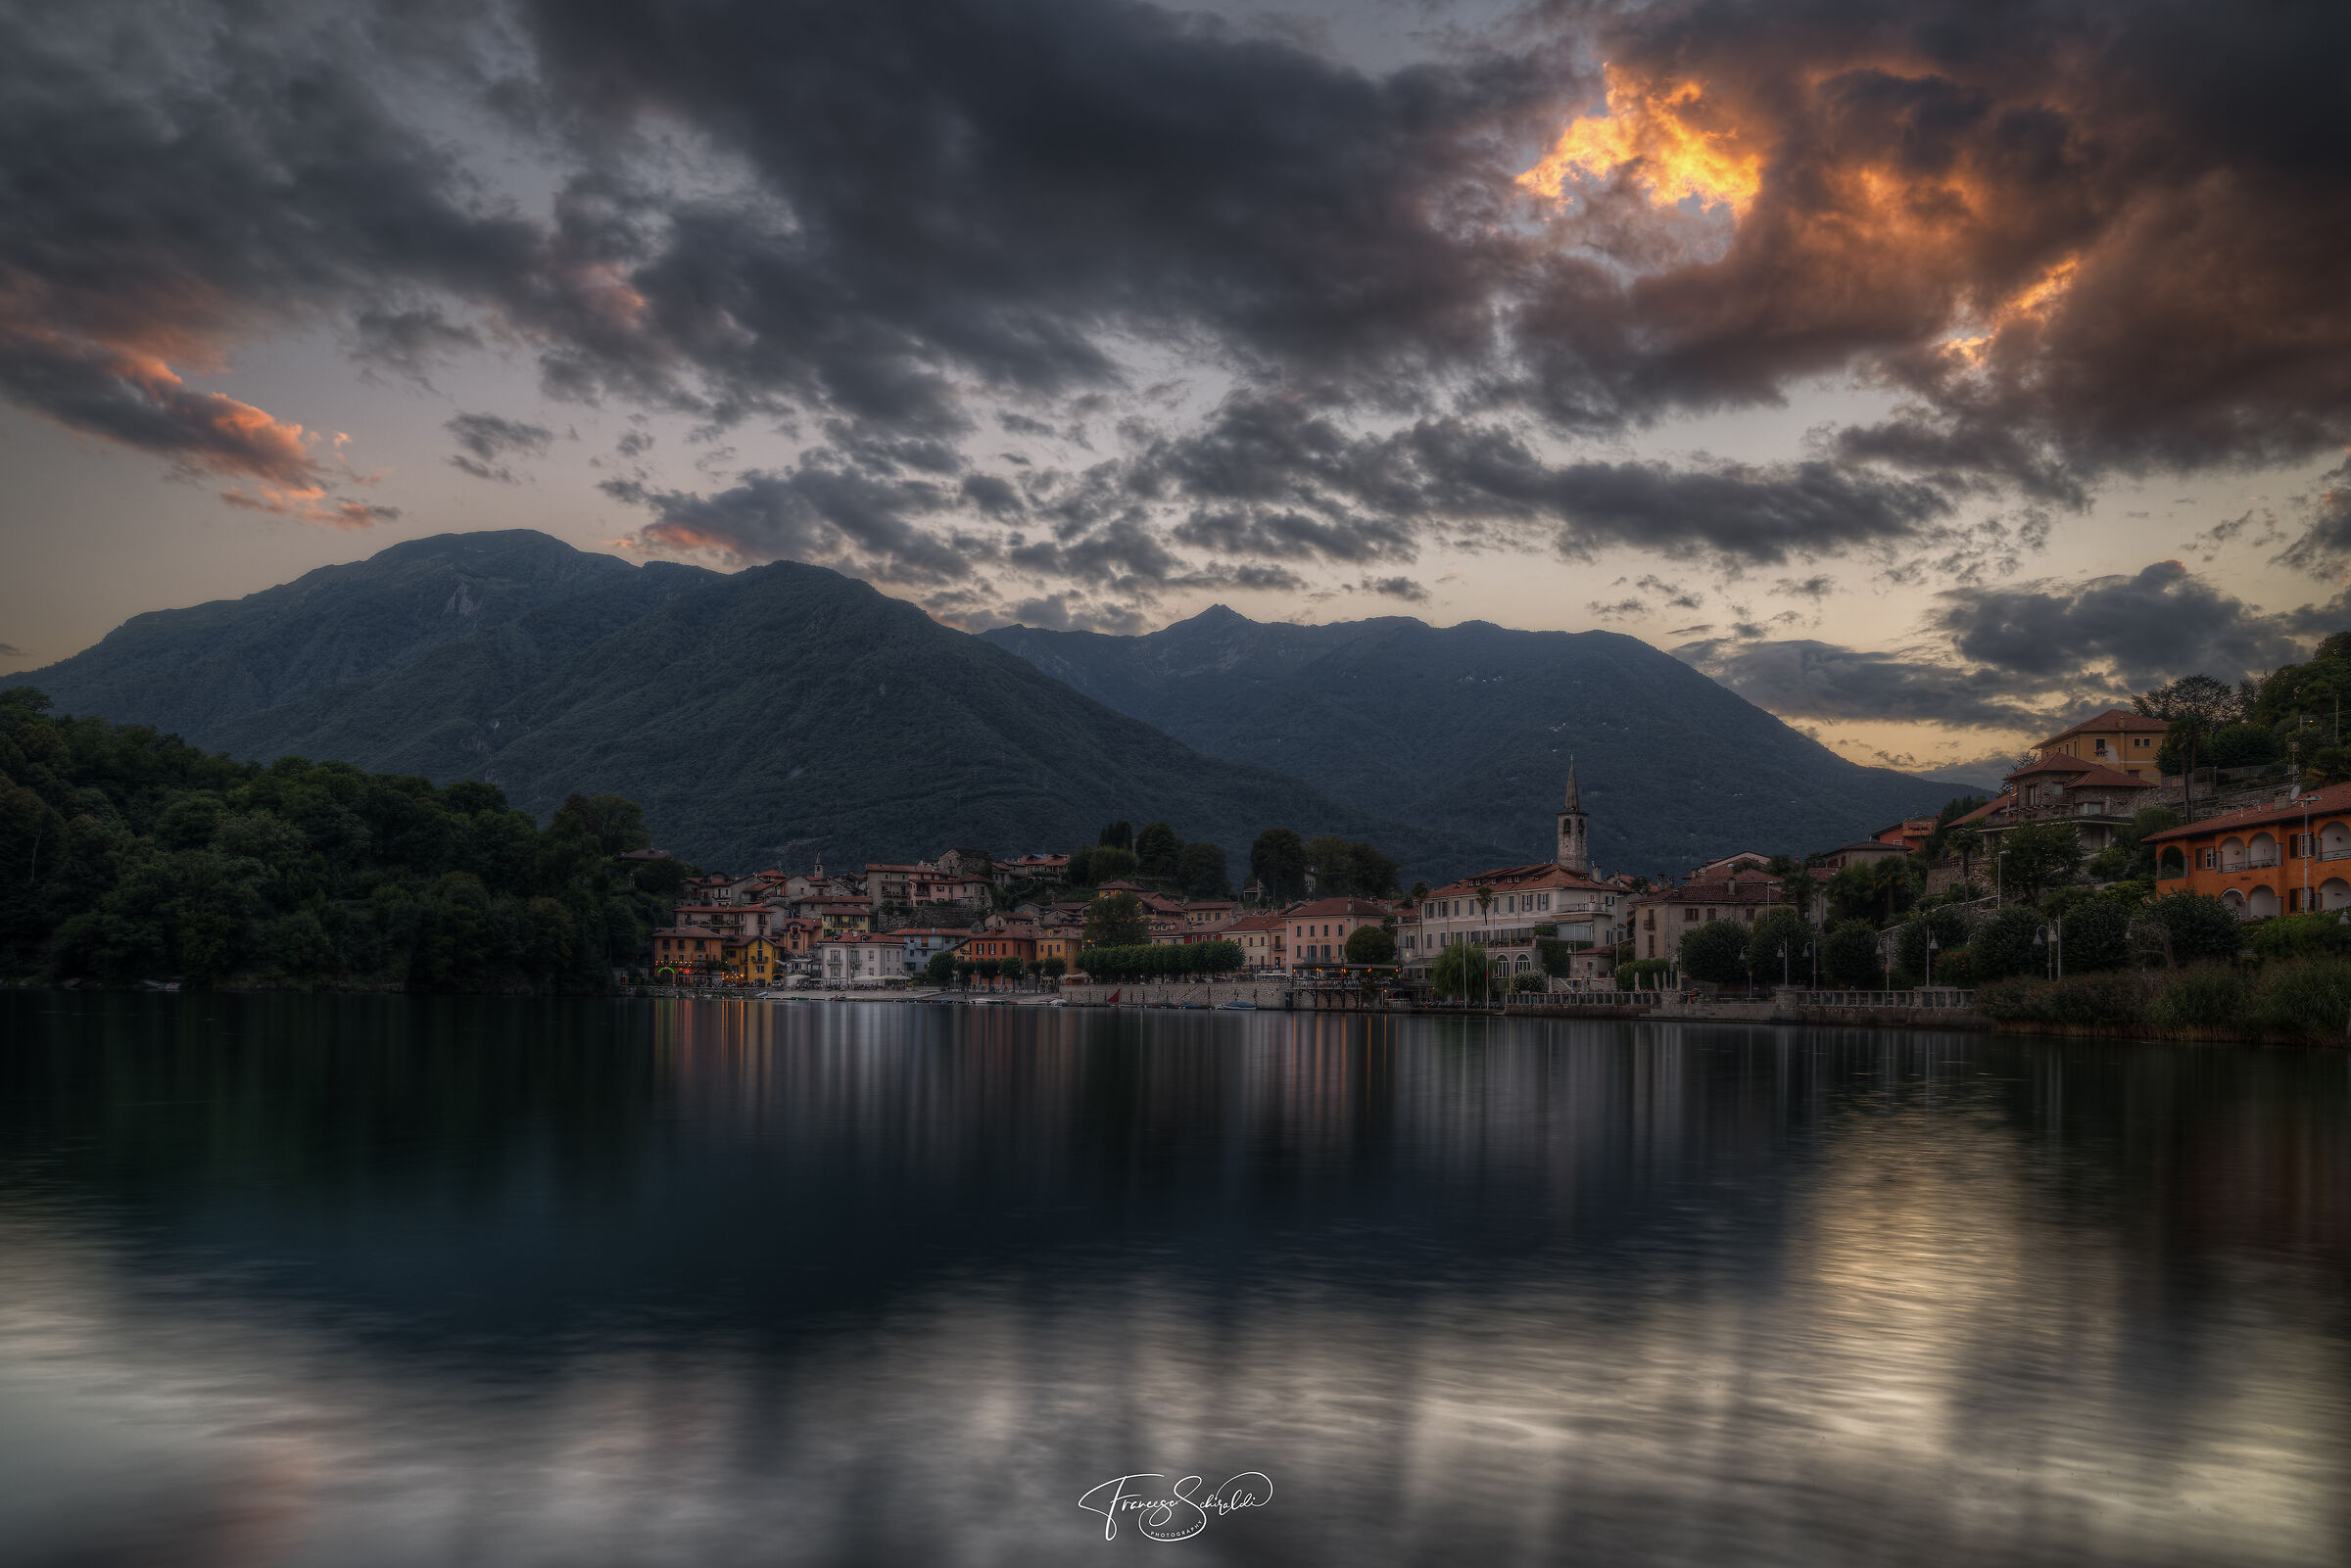 Mergozzo and its magical lake...